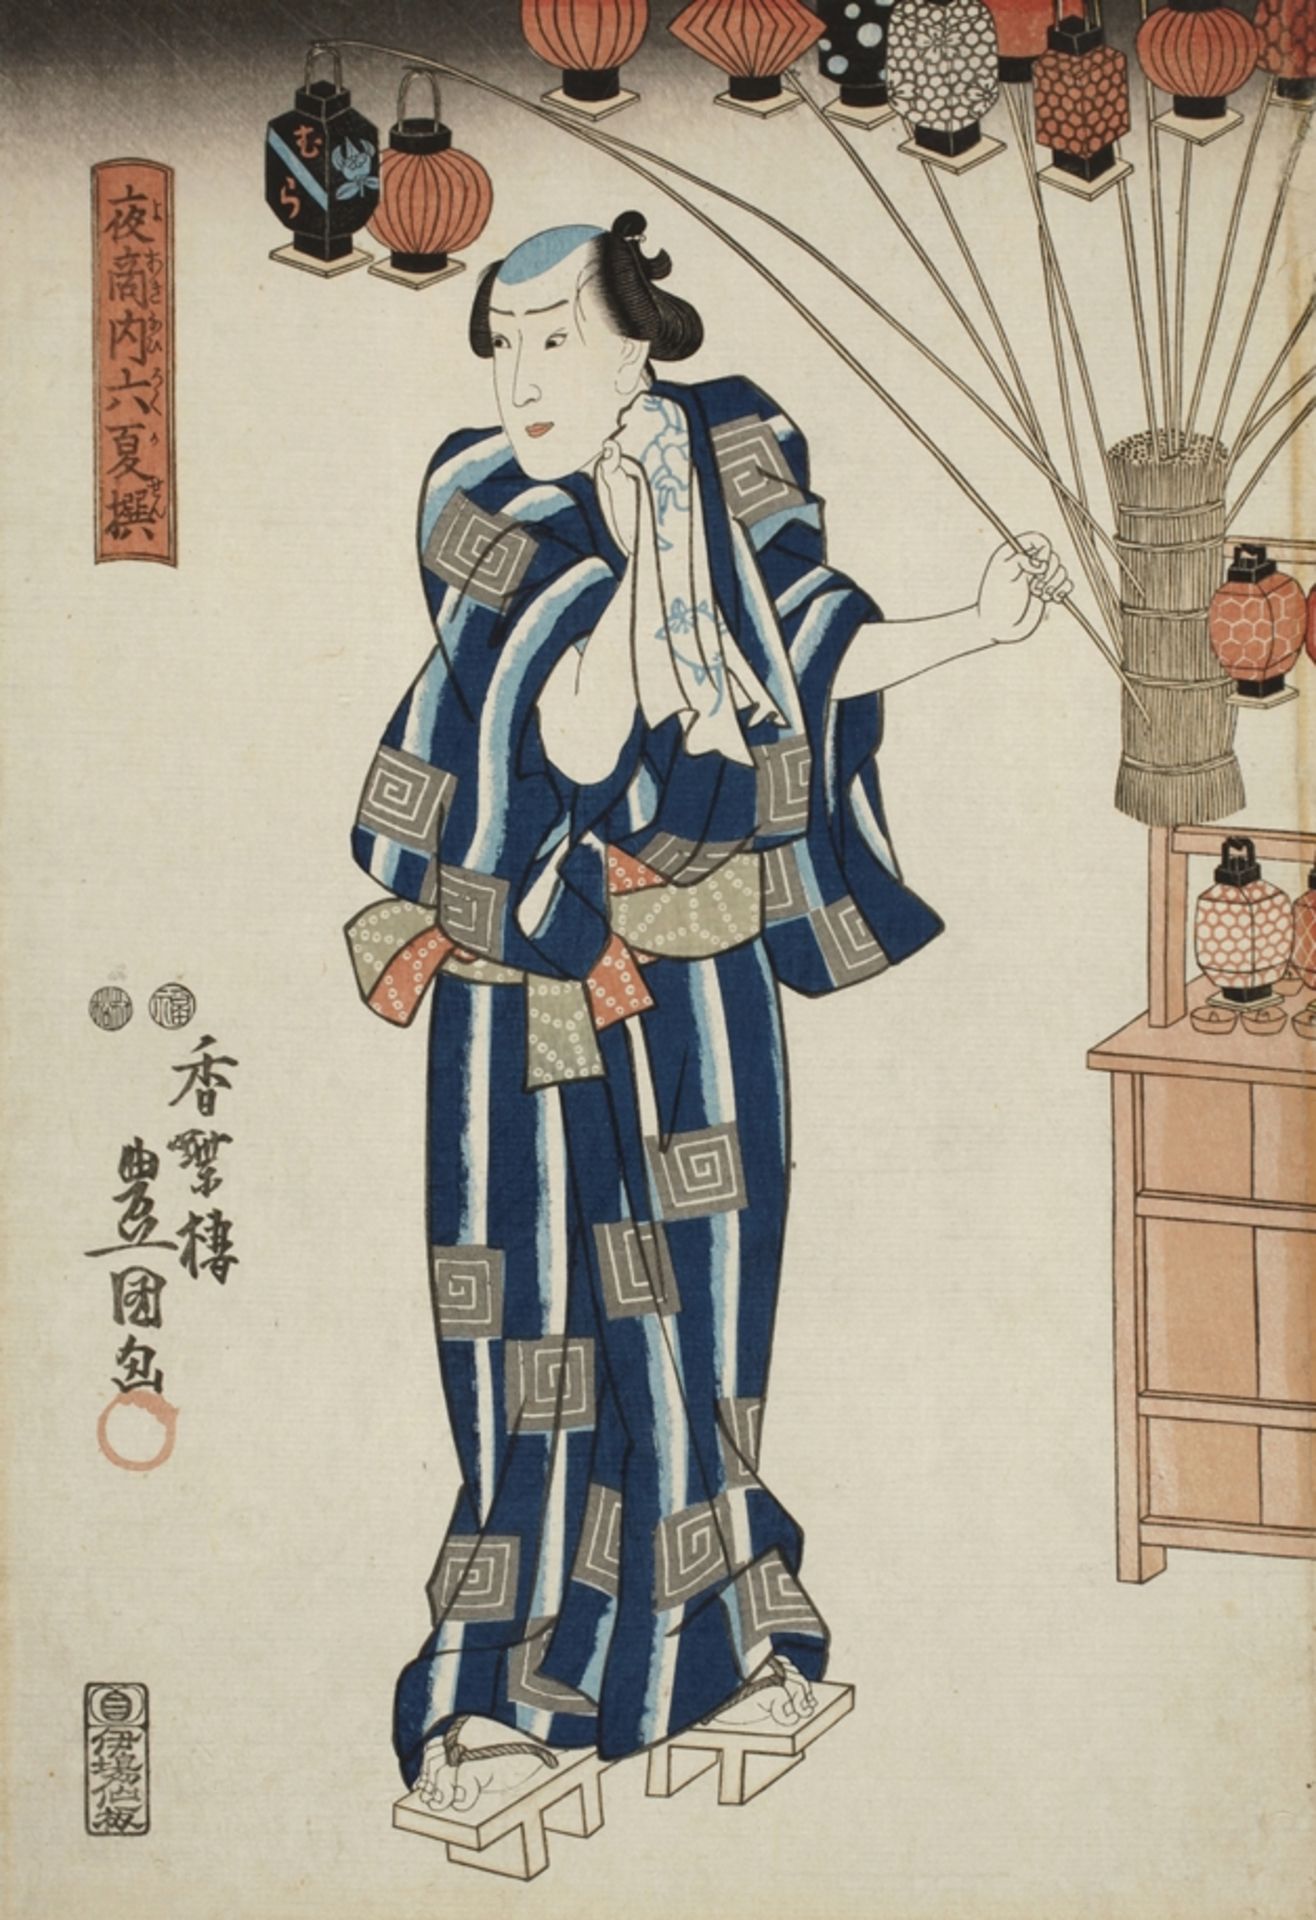 Farbholzschnitt Utagawa Kunisada (Toyokuni III.)